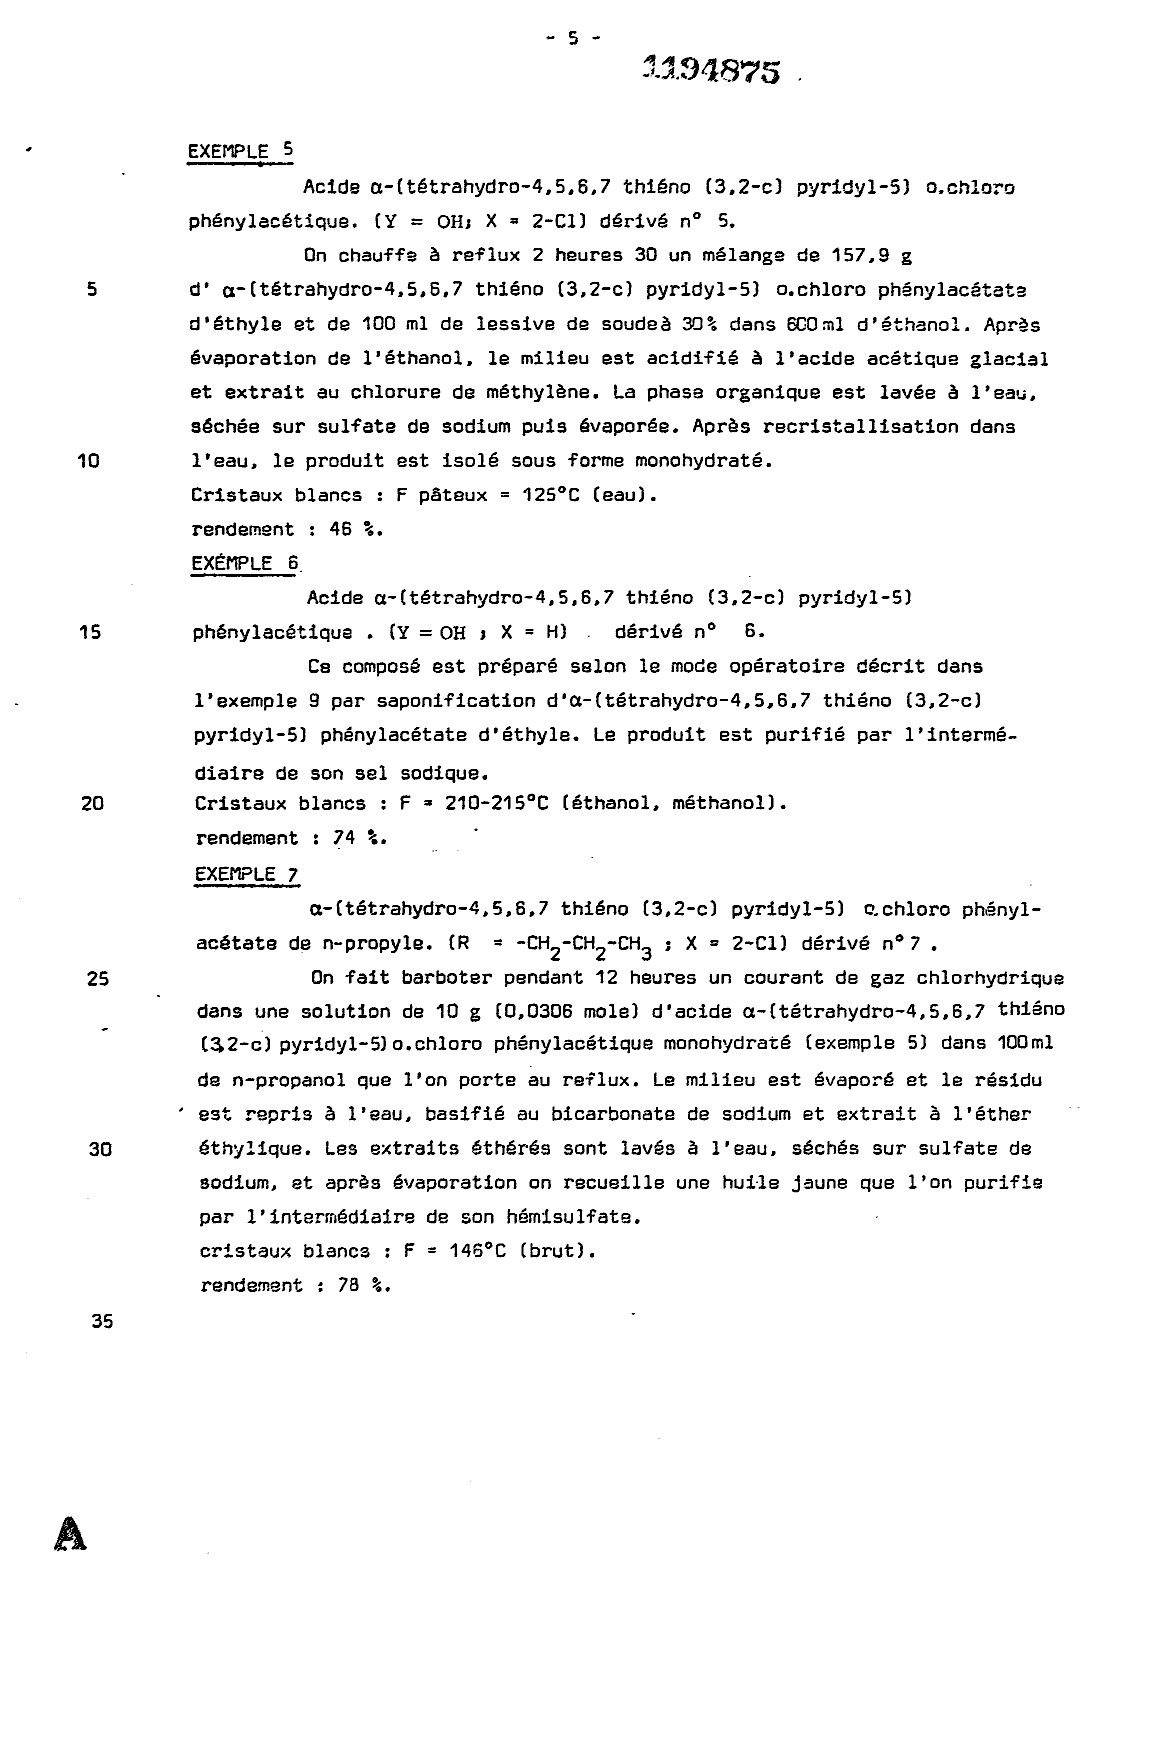 Canadian Patent Document 1194875. Description 19921218. Image 5 of 15